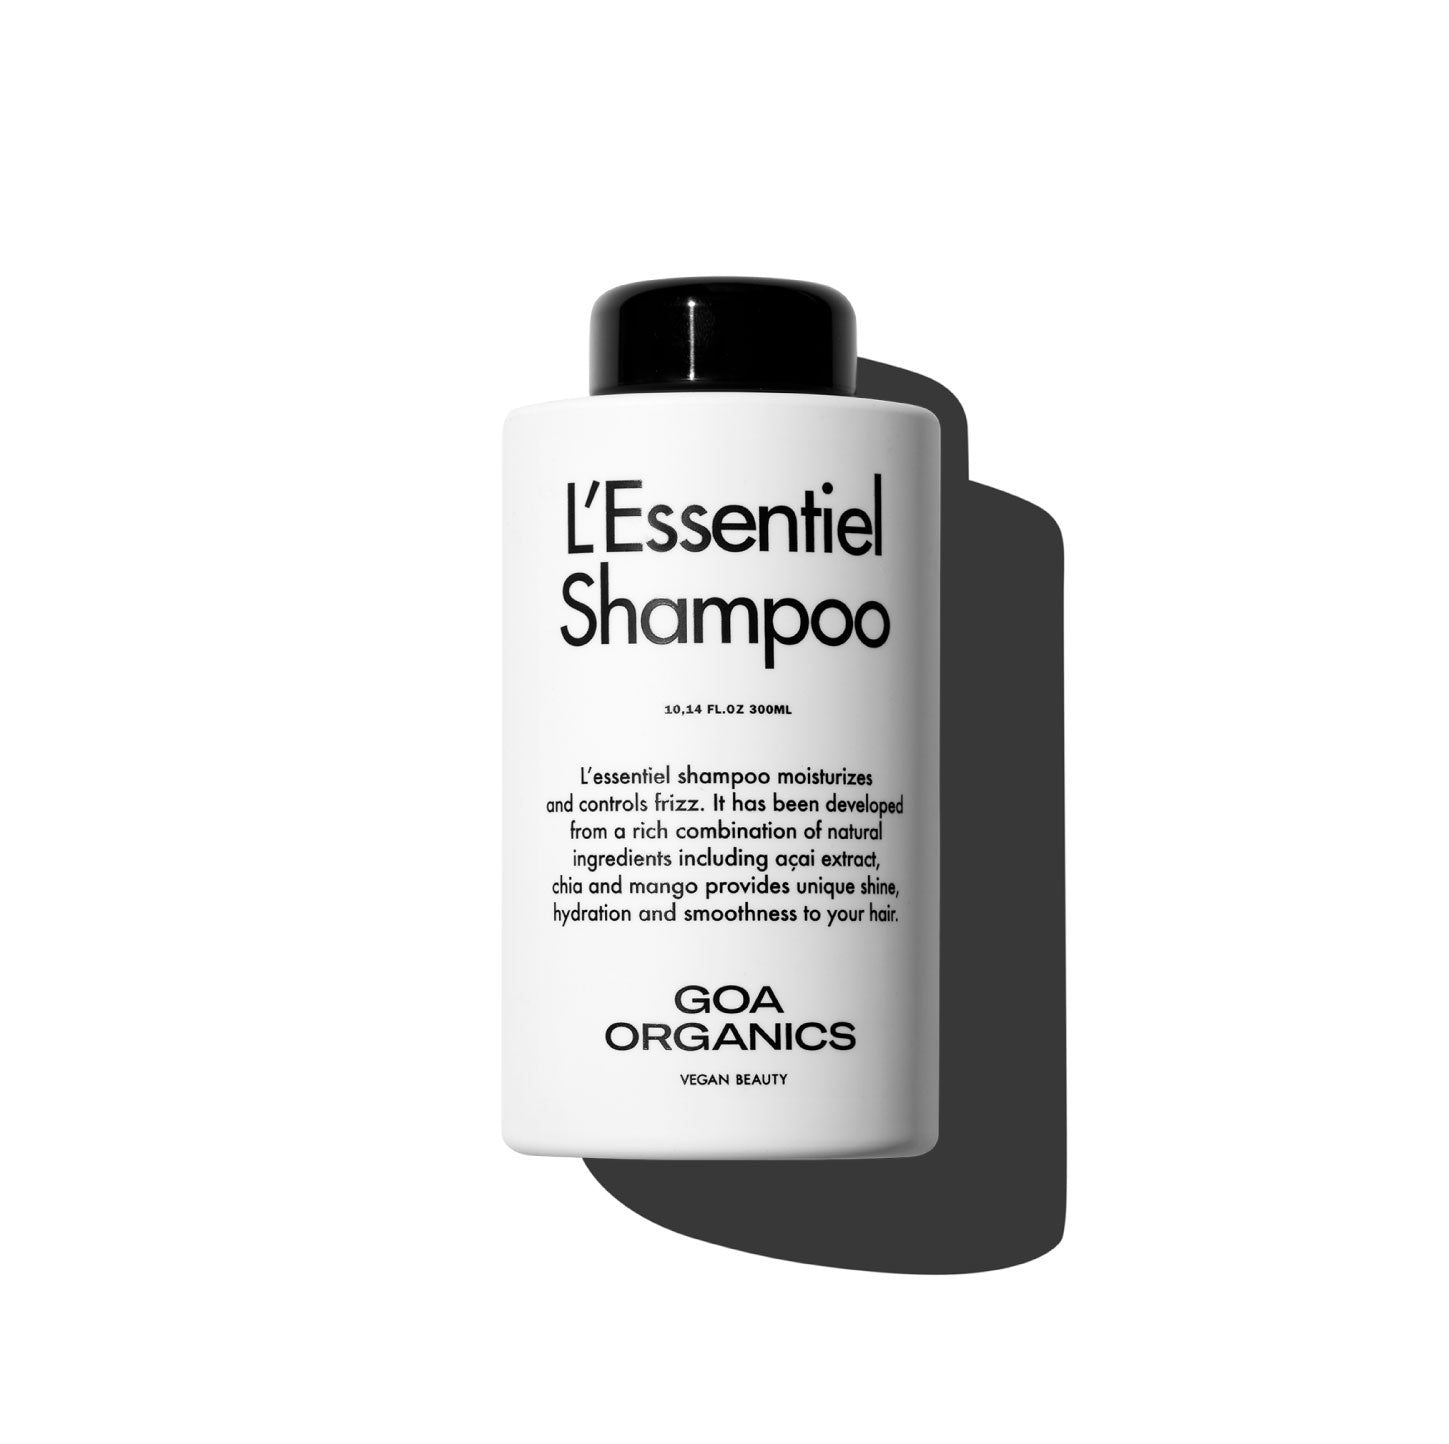 L'Essentiel Shampoo